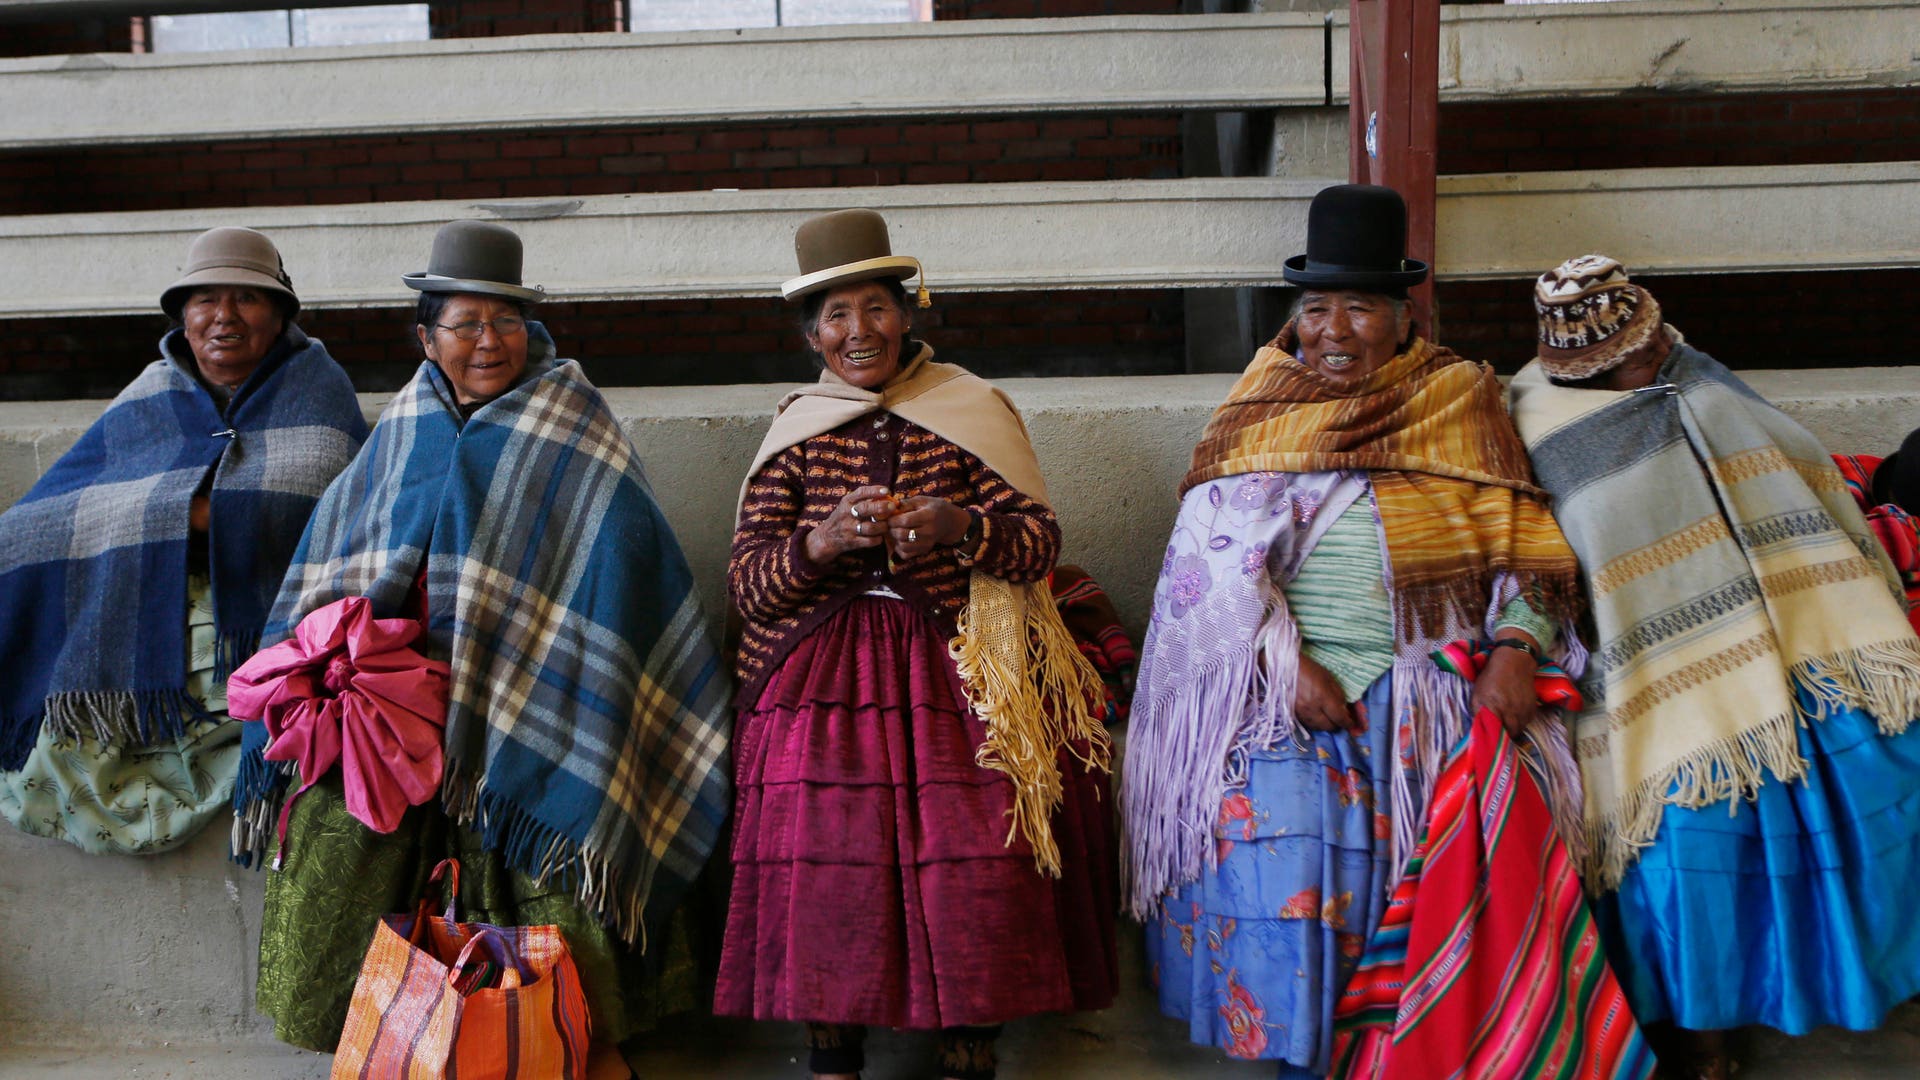 Перу одежда